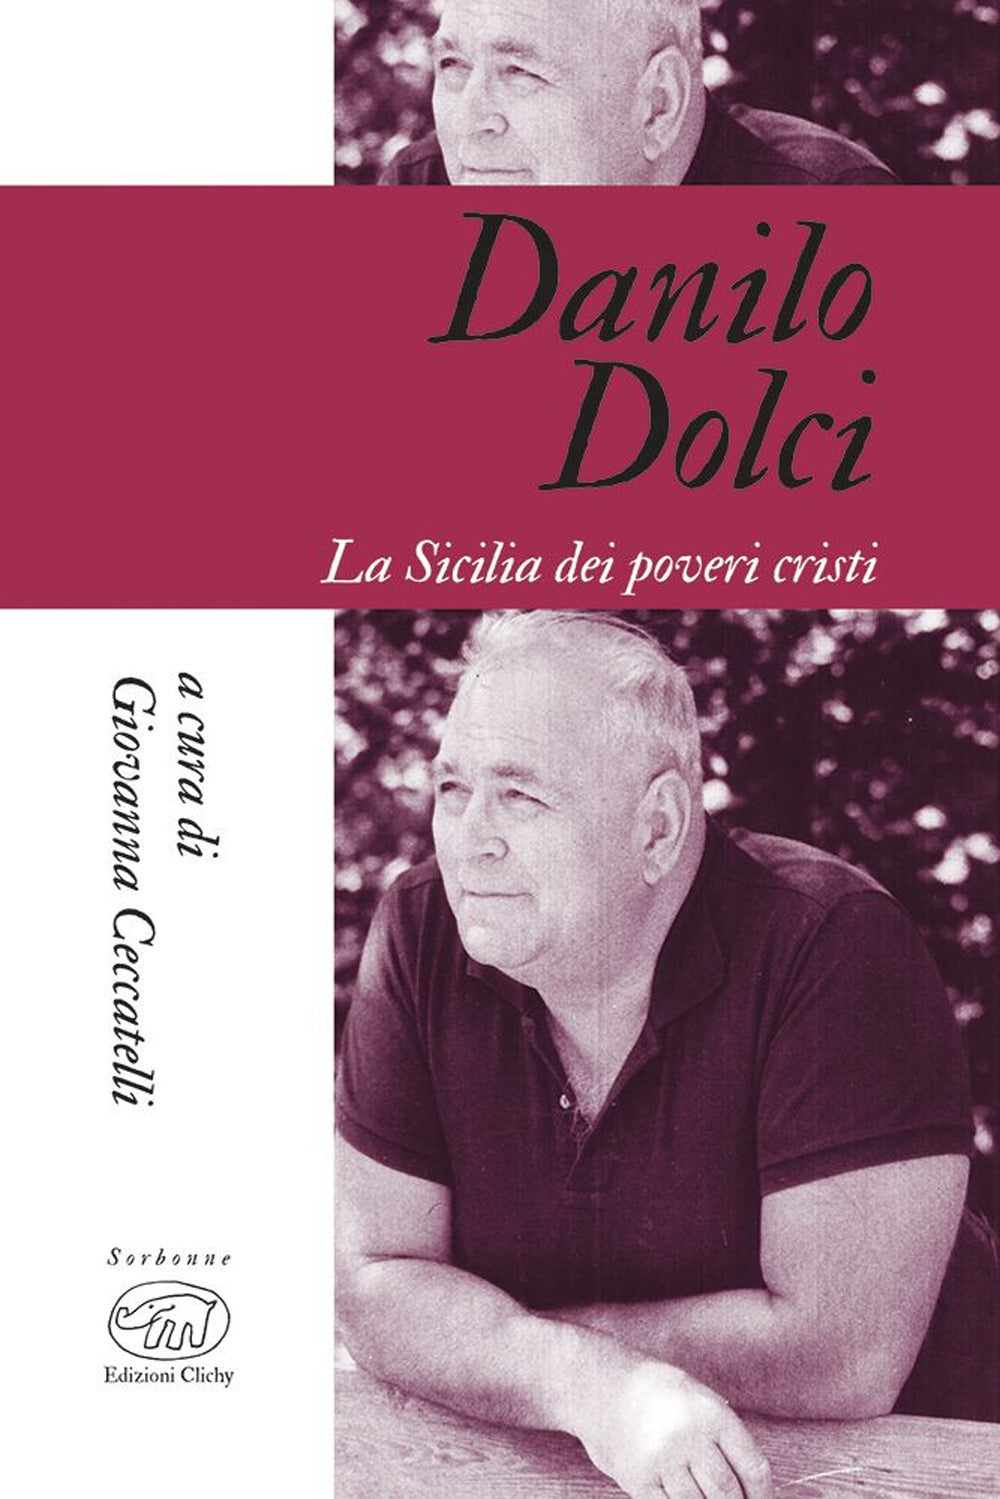 Danilo Dolci. La Sicilia dei poveri cristi.